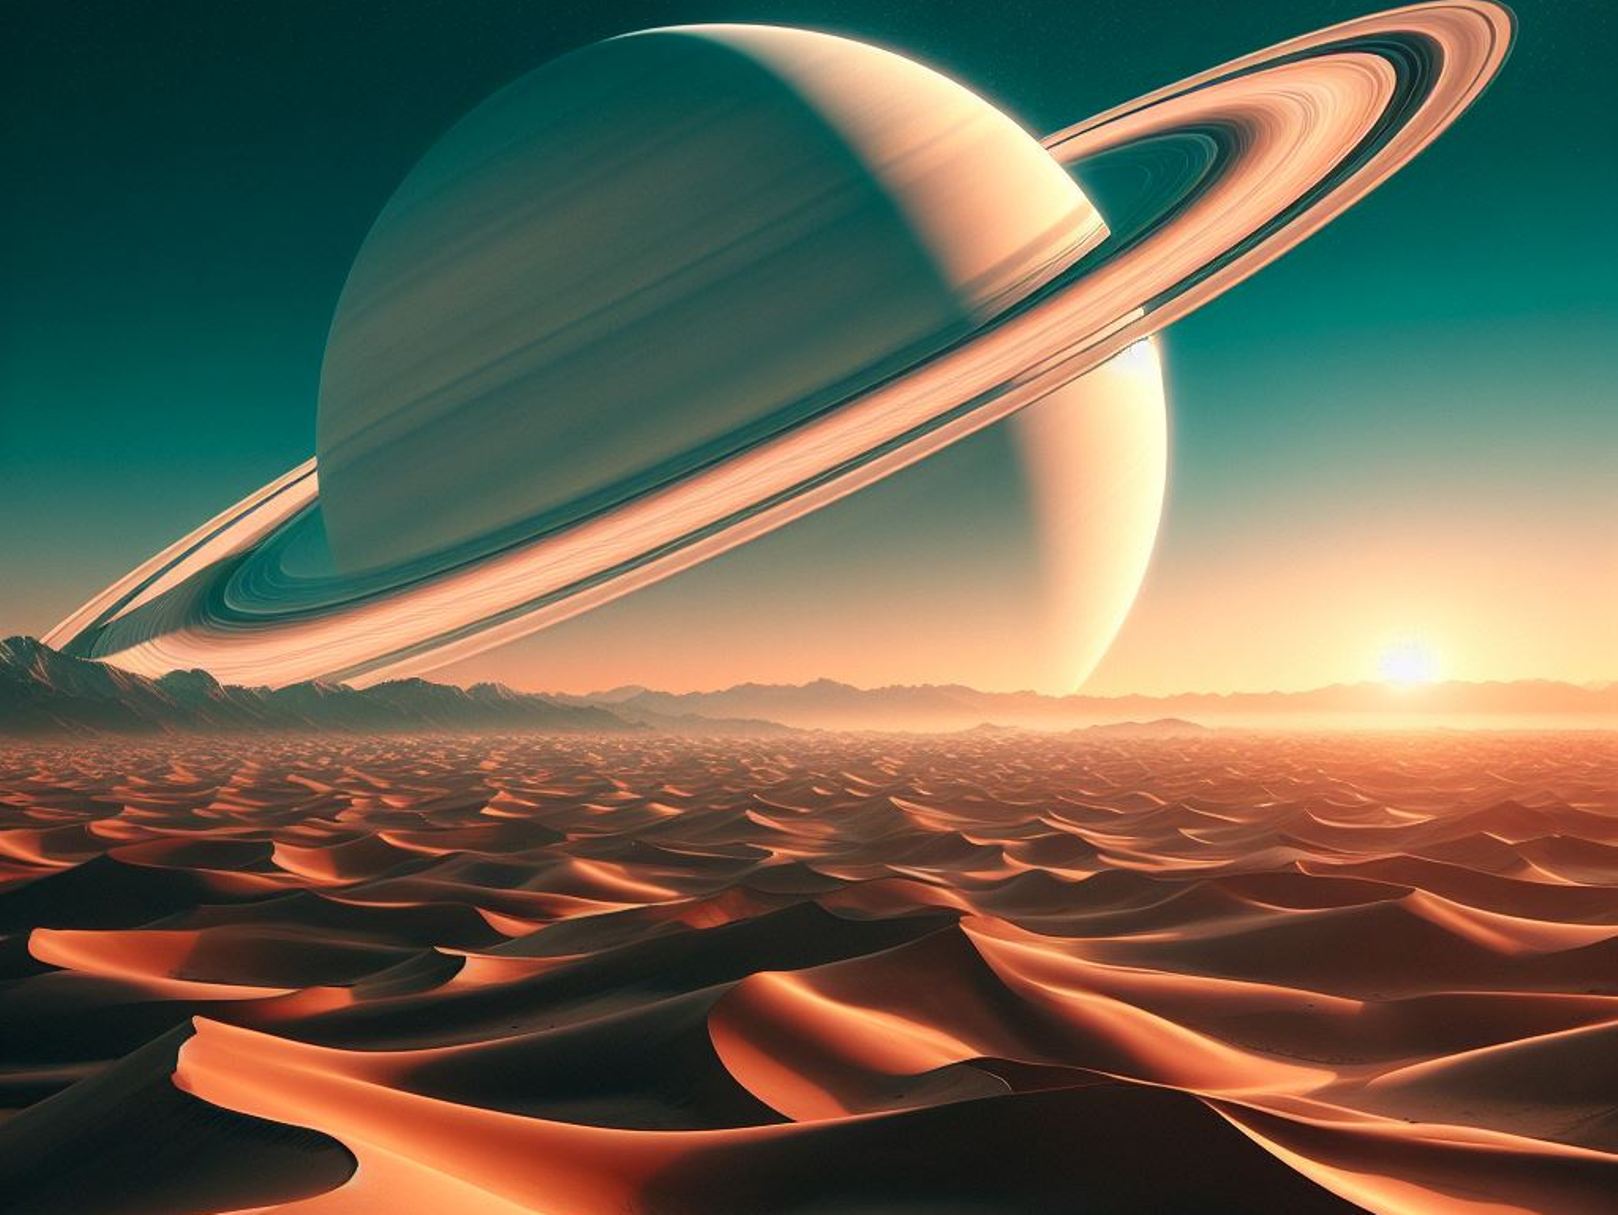 Une vue de Saturne à partir des dunes de sable de Titan. © IA BING Designer Microsoft Corporation (image générée avec IA)